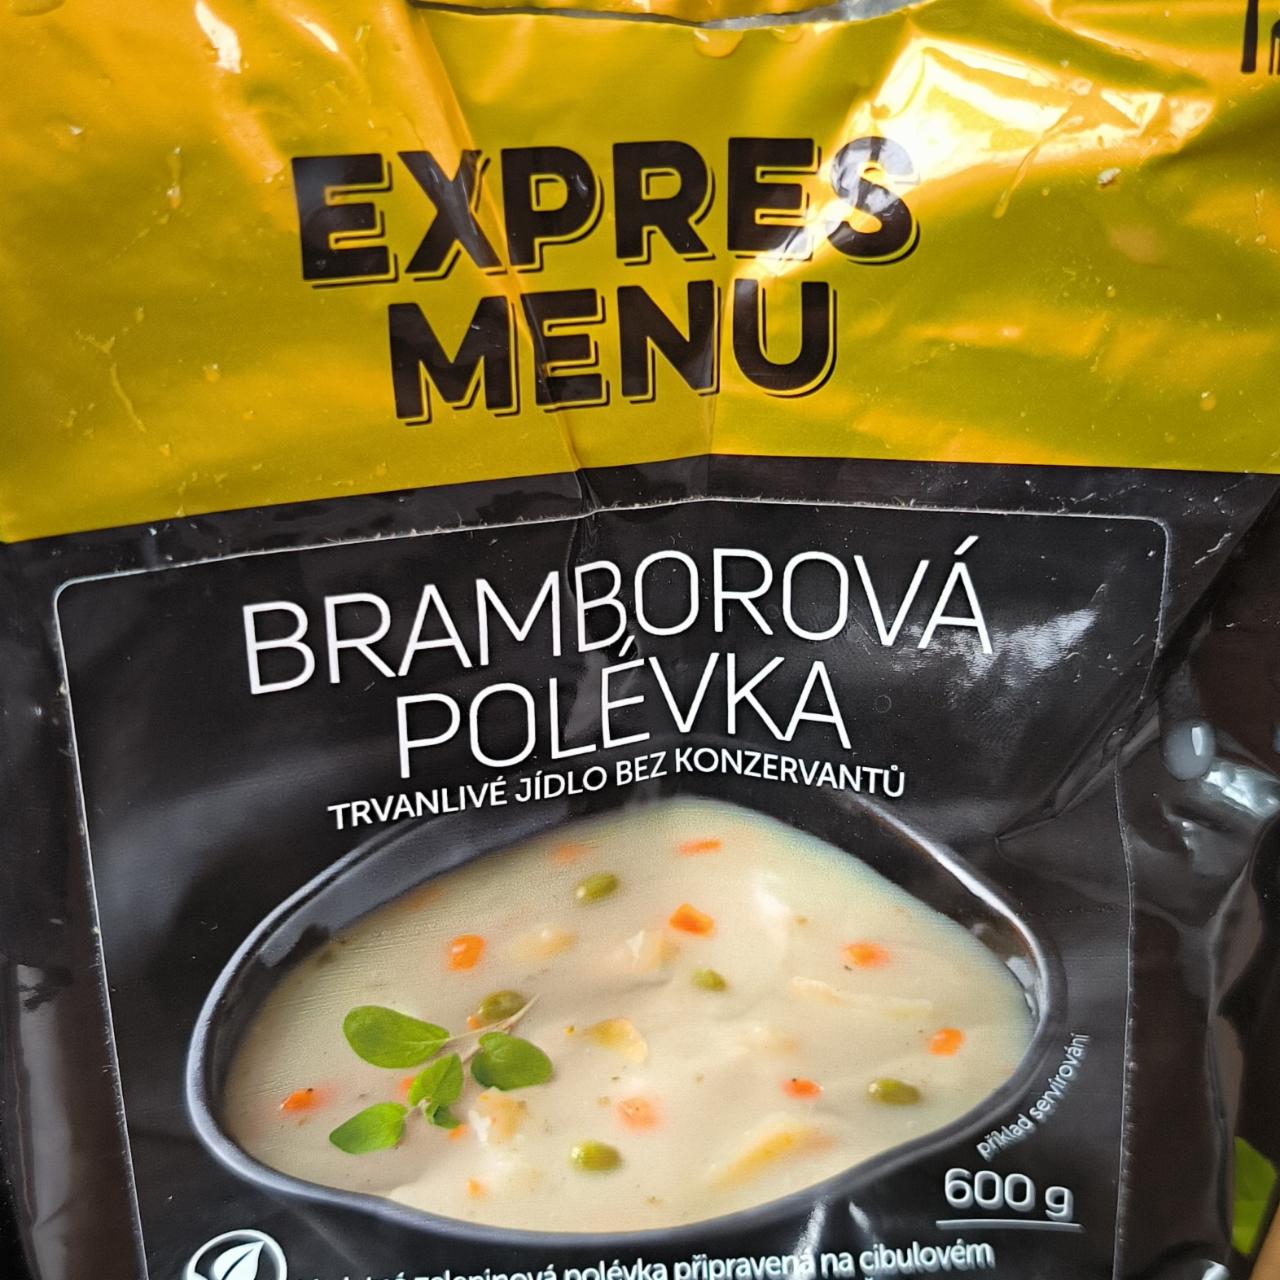 Fotografie - Bramborová polévka Expres menu